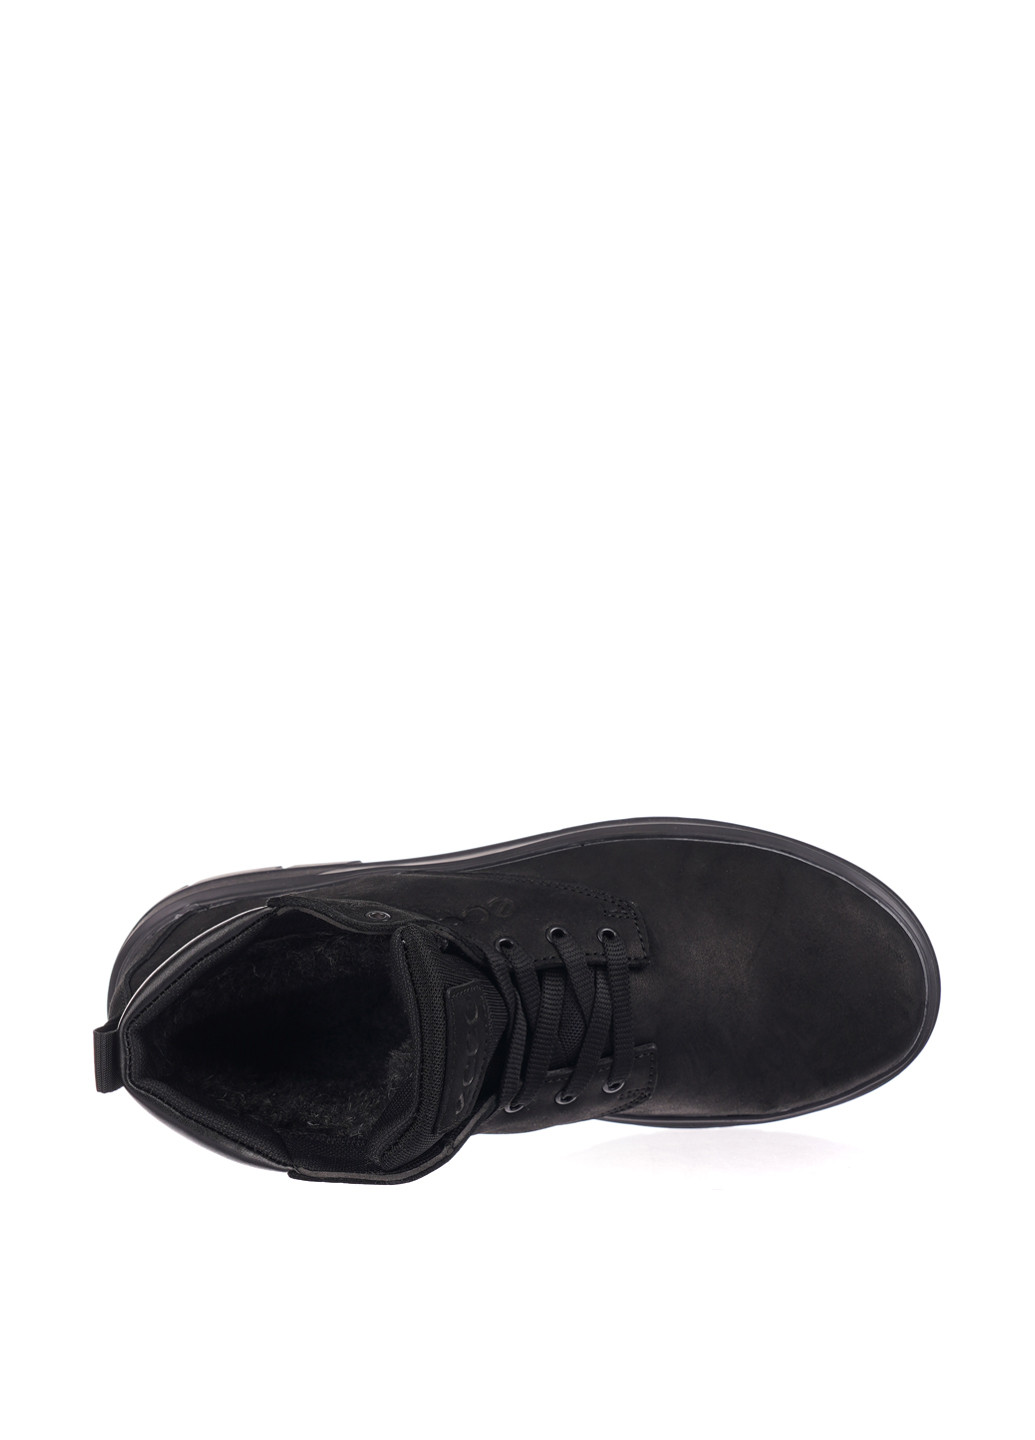 Черные зимние ботинки Levons